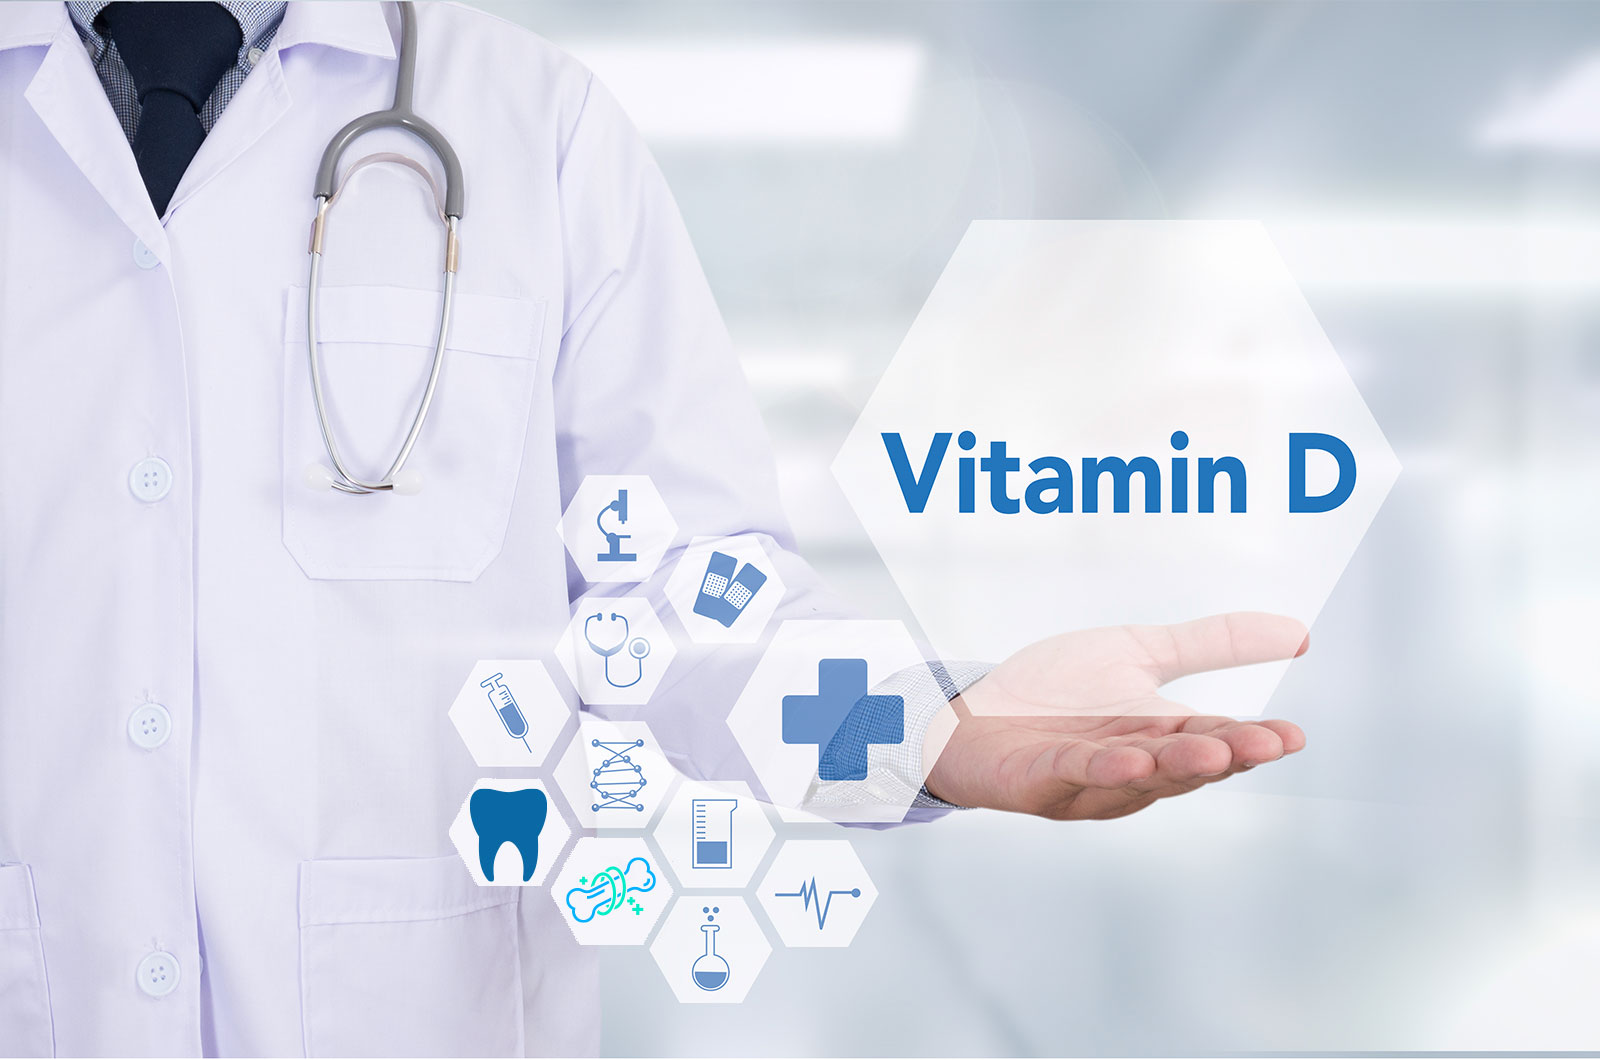 Arzt mit Stethoskop, illustriertes Vitamin D im Hexagon und weitere medizische Darstellungen  